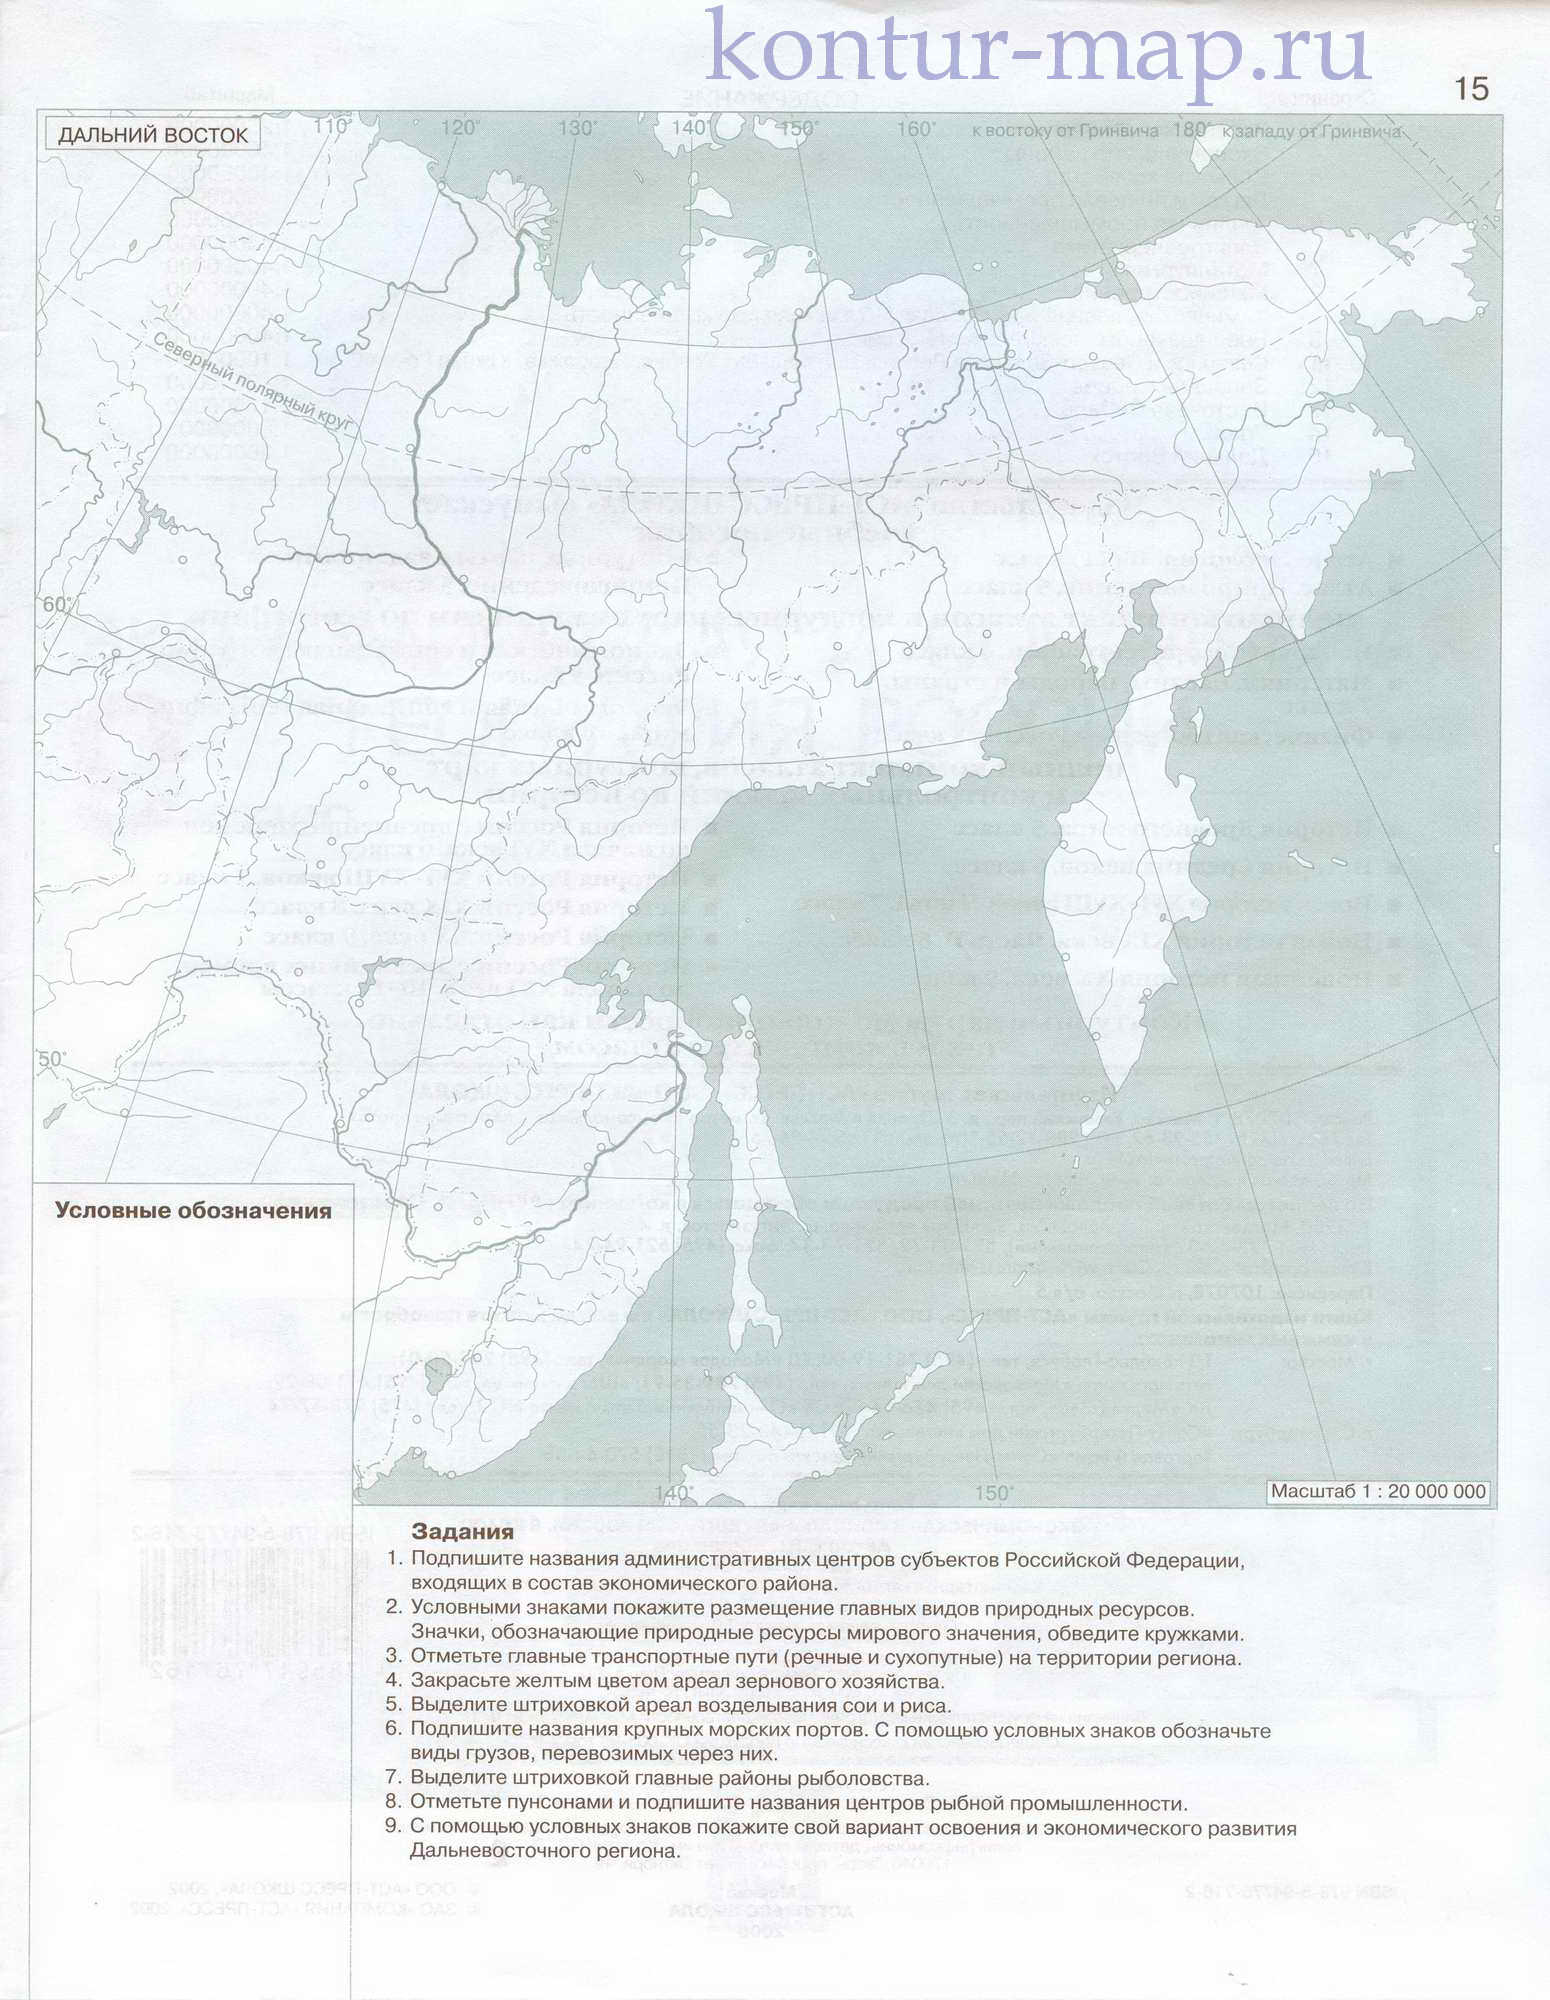 Контурная карта Дальнего Востока из атласа экономической и социальнойгеографии России. Дальний Восток - контурная карта, A0 -